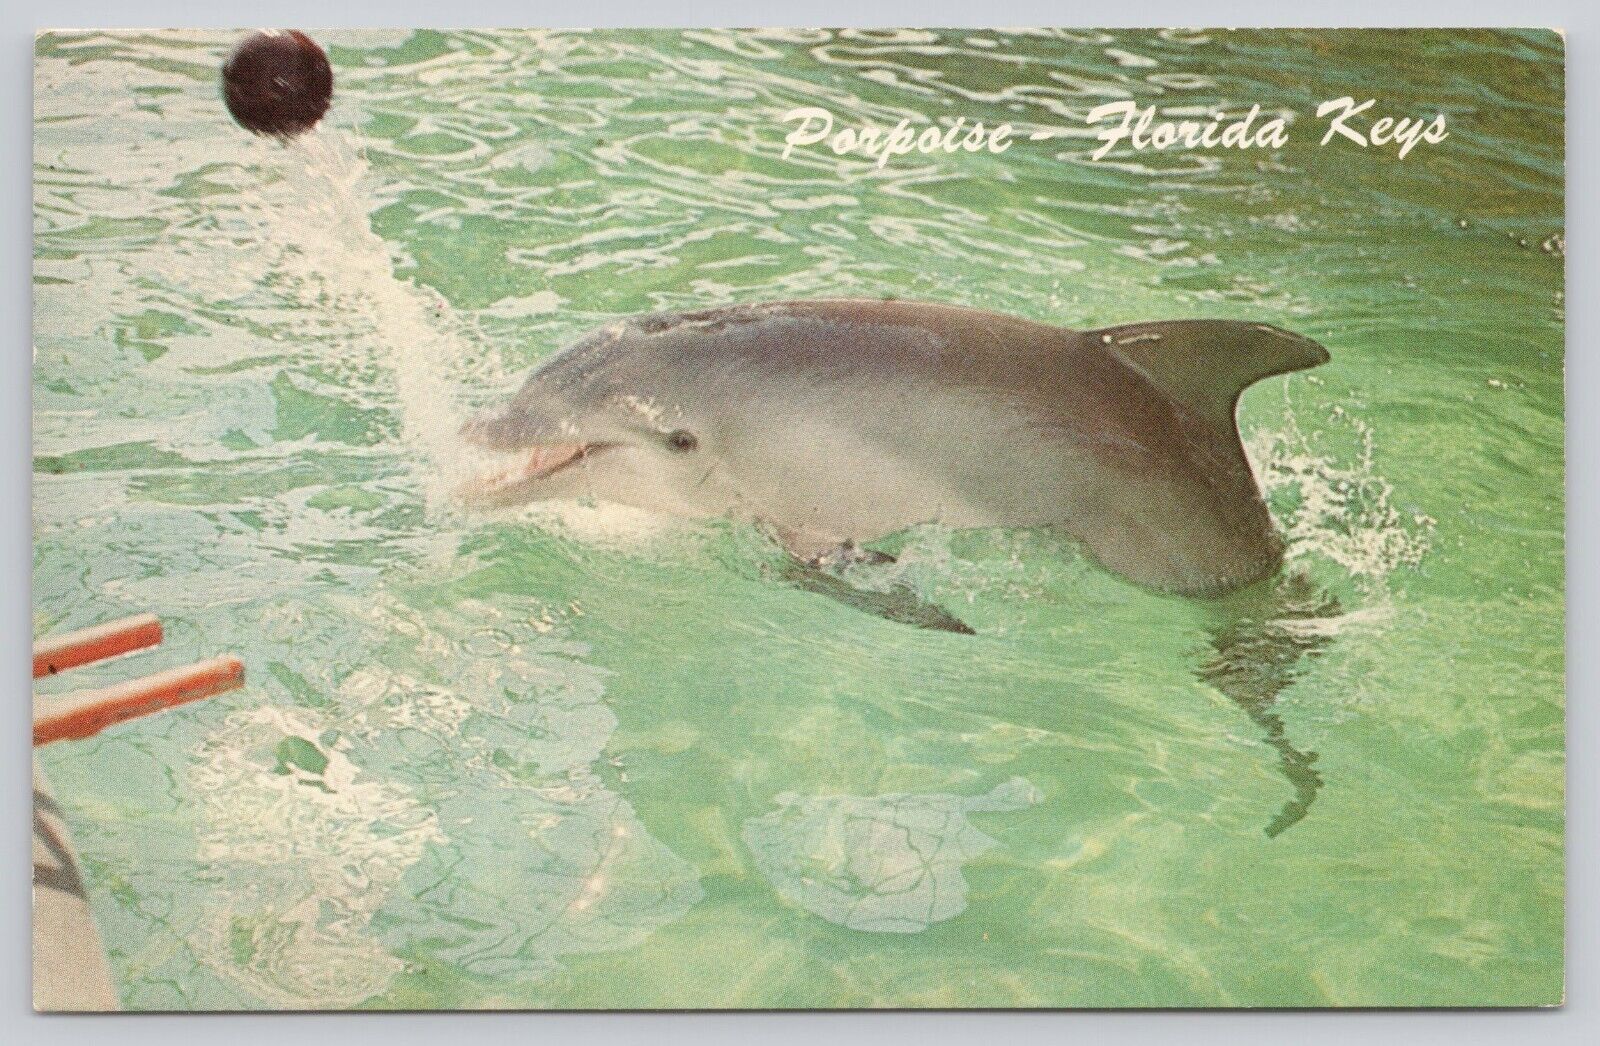 Porpoise Performing Miami's Seaquarium Florida Keys Vintage Postcard